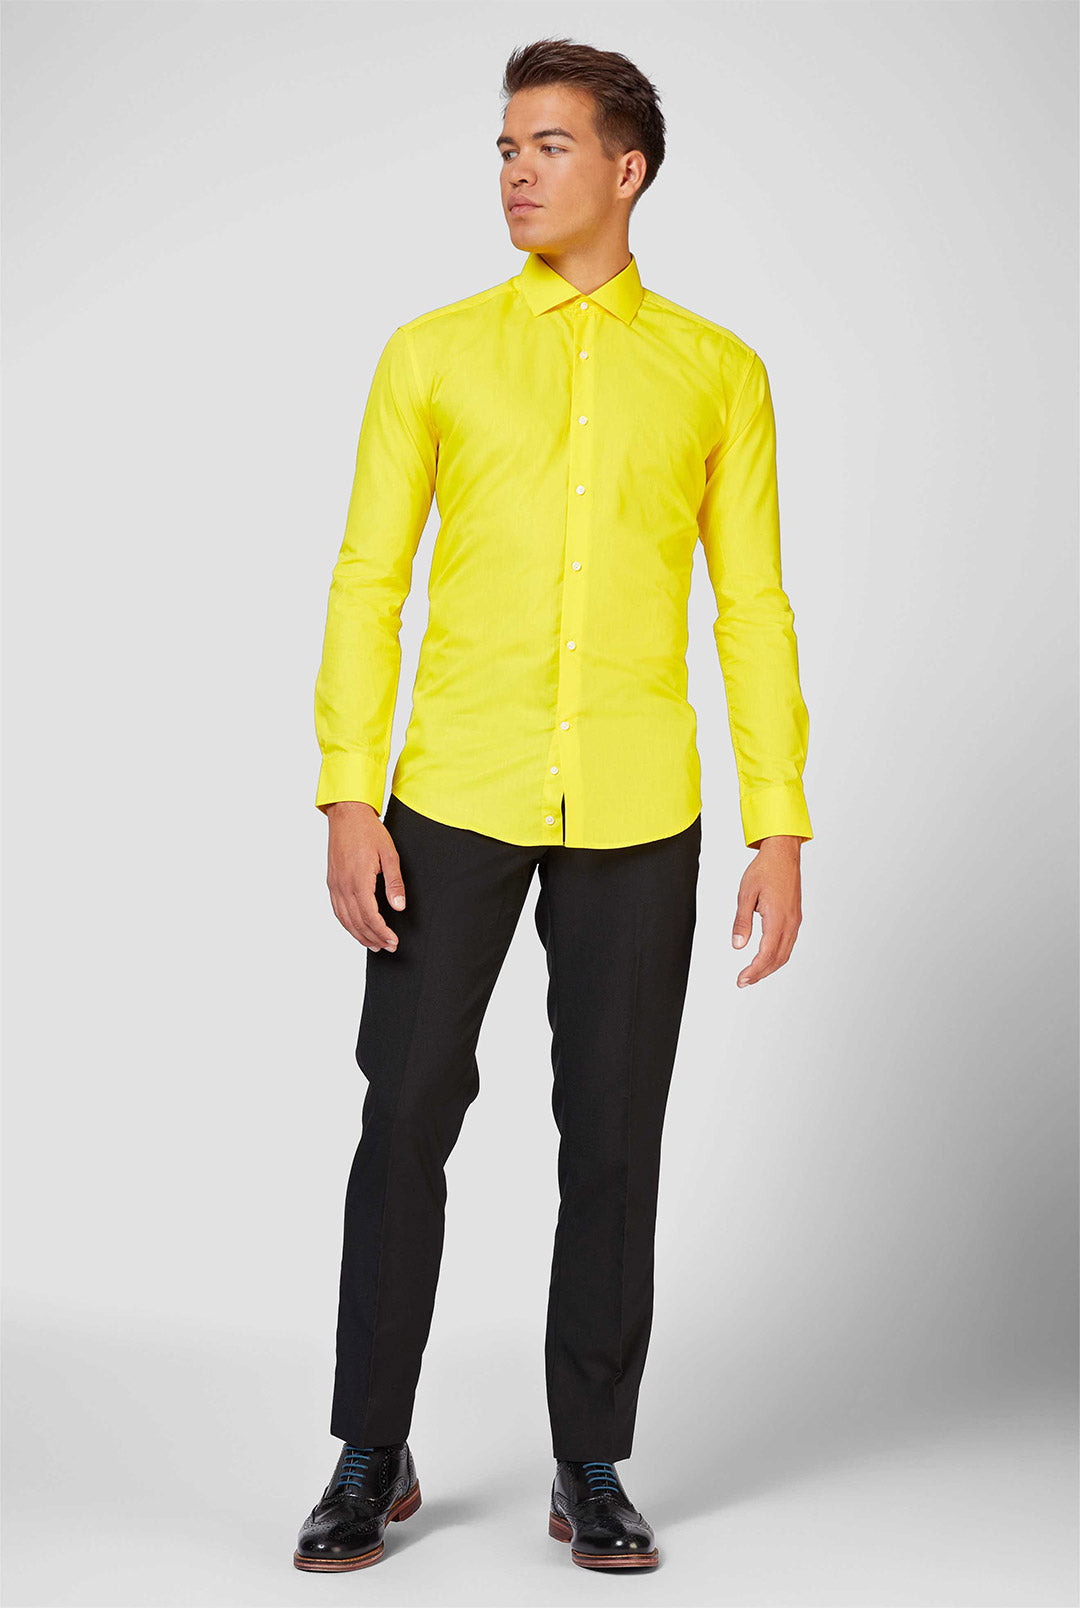 Yellow Fellow Shirt | Long Sleeved Dress Shirt | OppoSuits